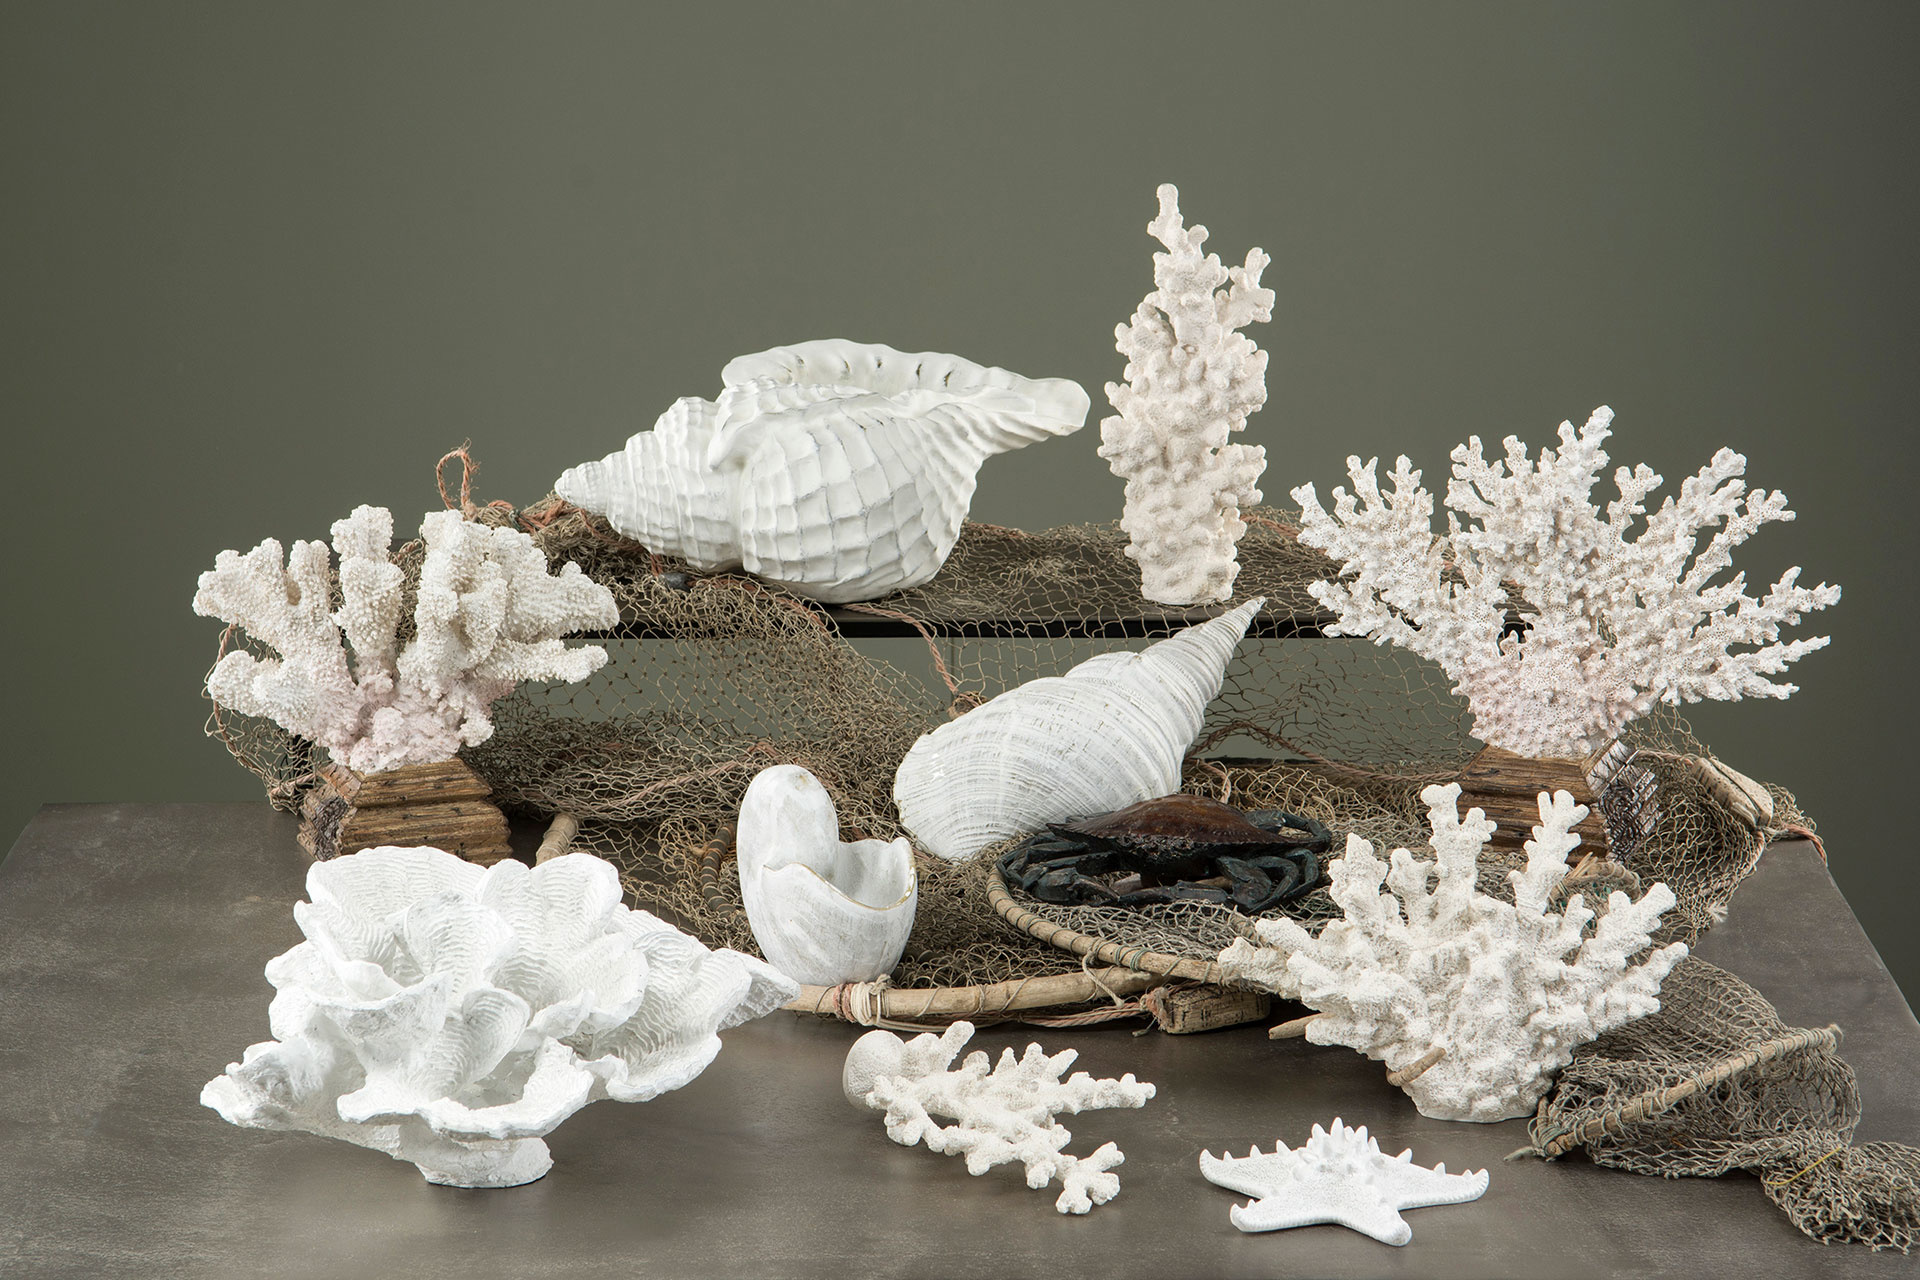 Vit korall, låg - Alot decoration